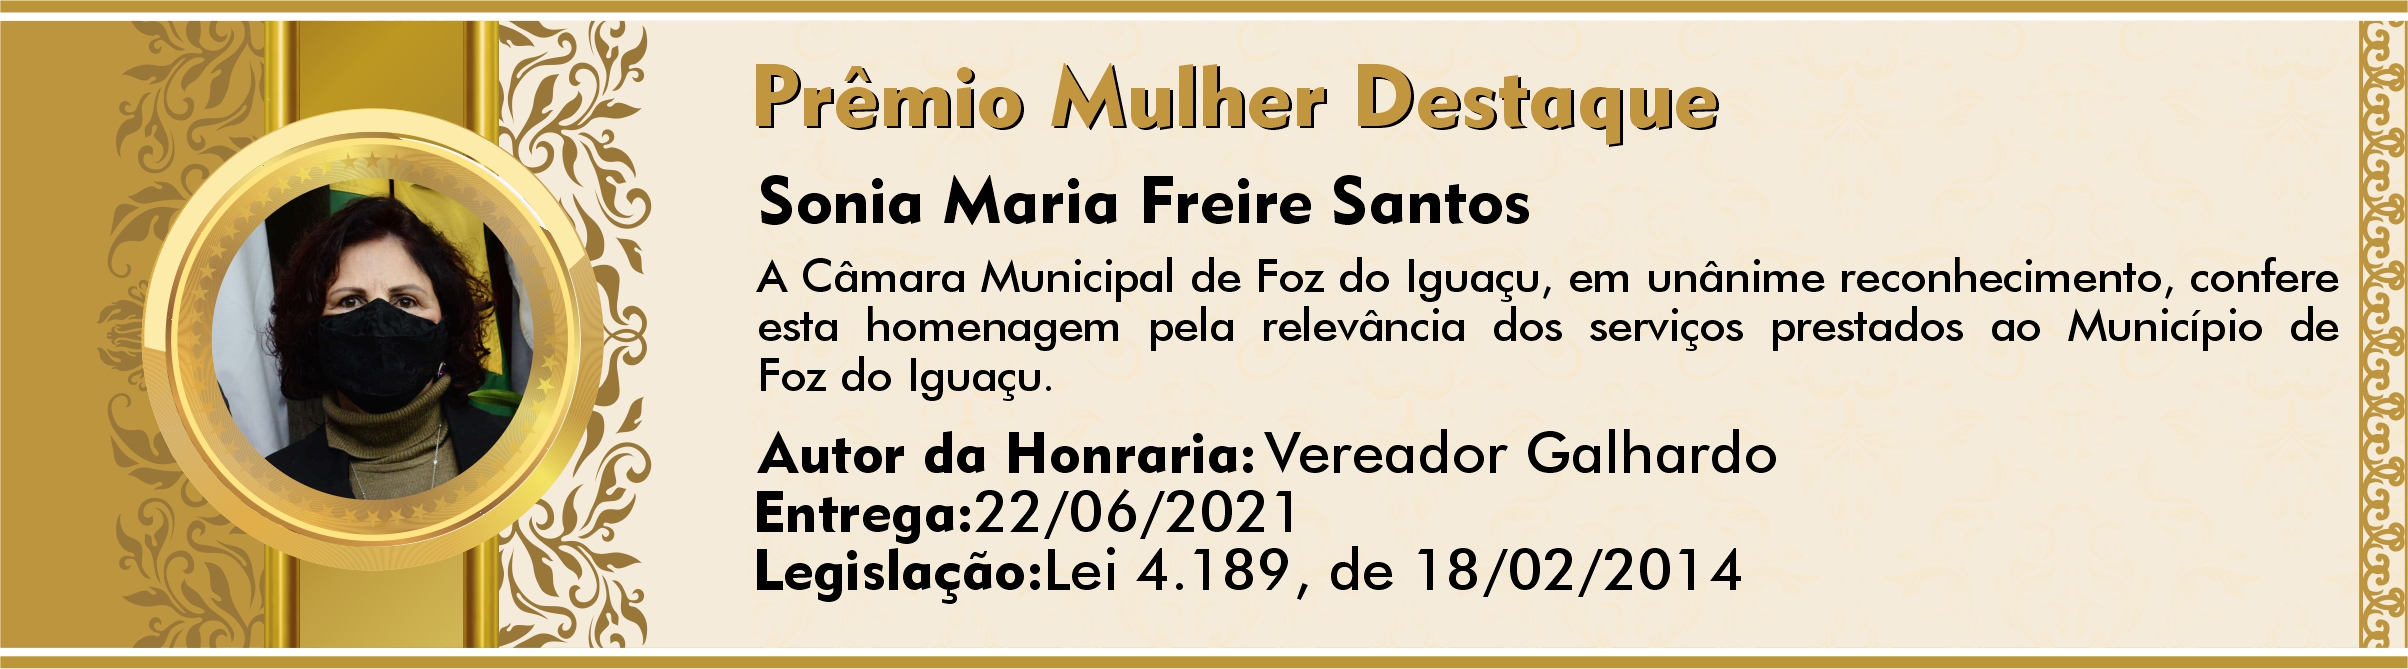 Sonia Maria Freire Santos